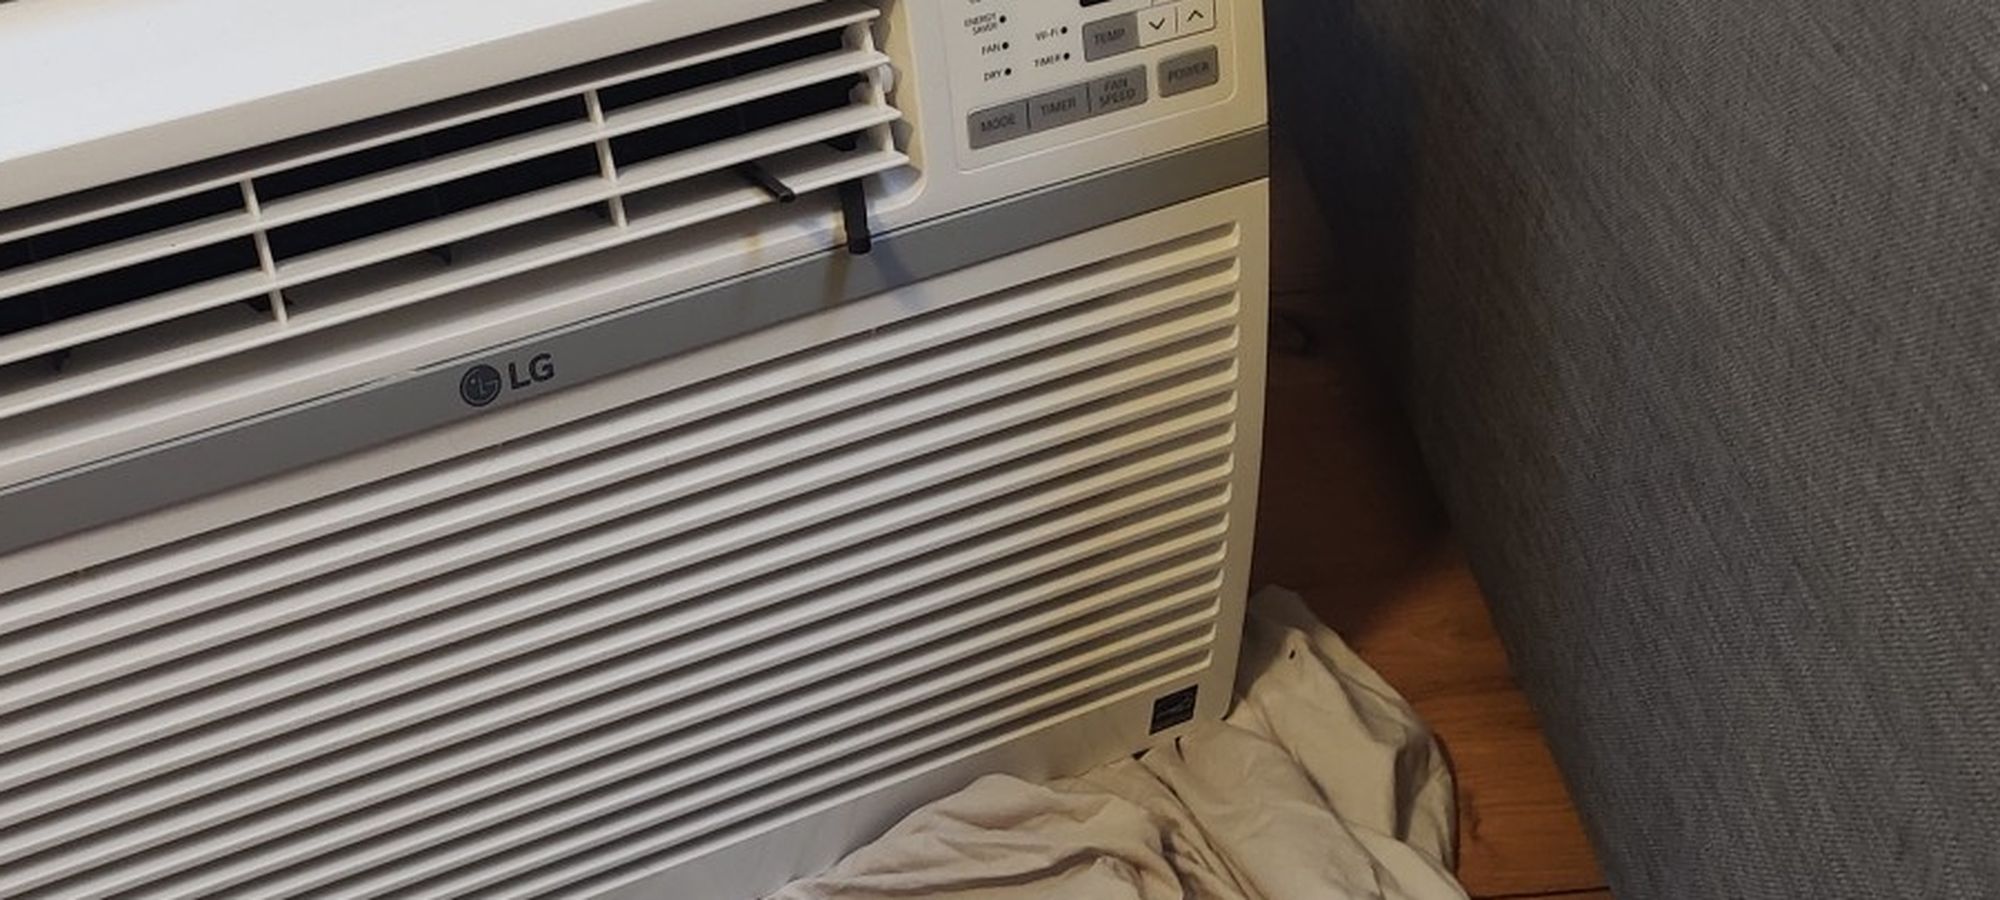 Air Conditioner 10,000 BTU - WIFI Enabled - Beast of a unit - LG LW1017ERSM